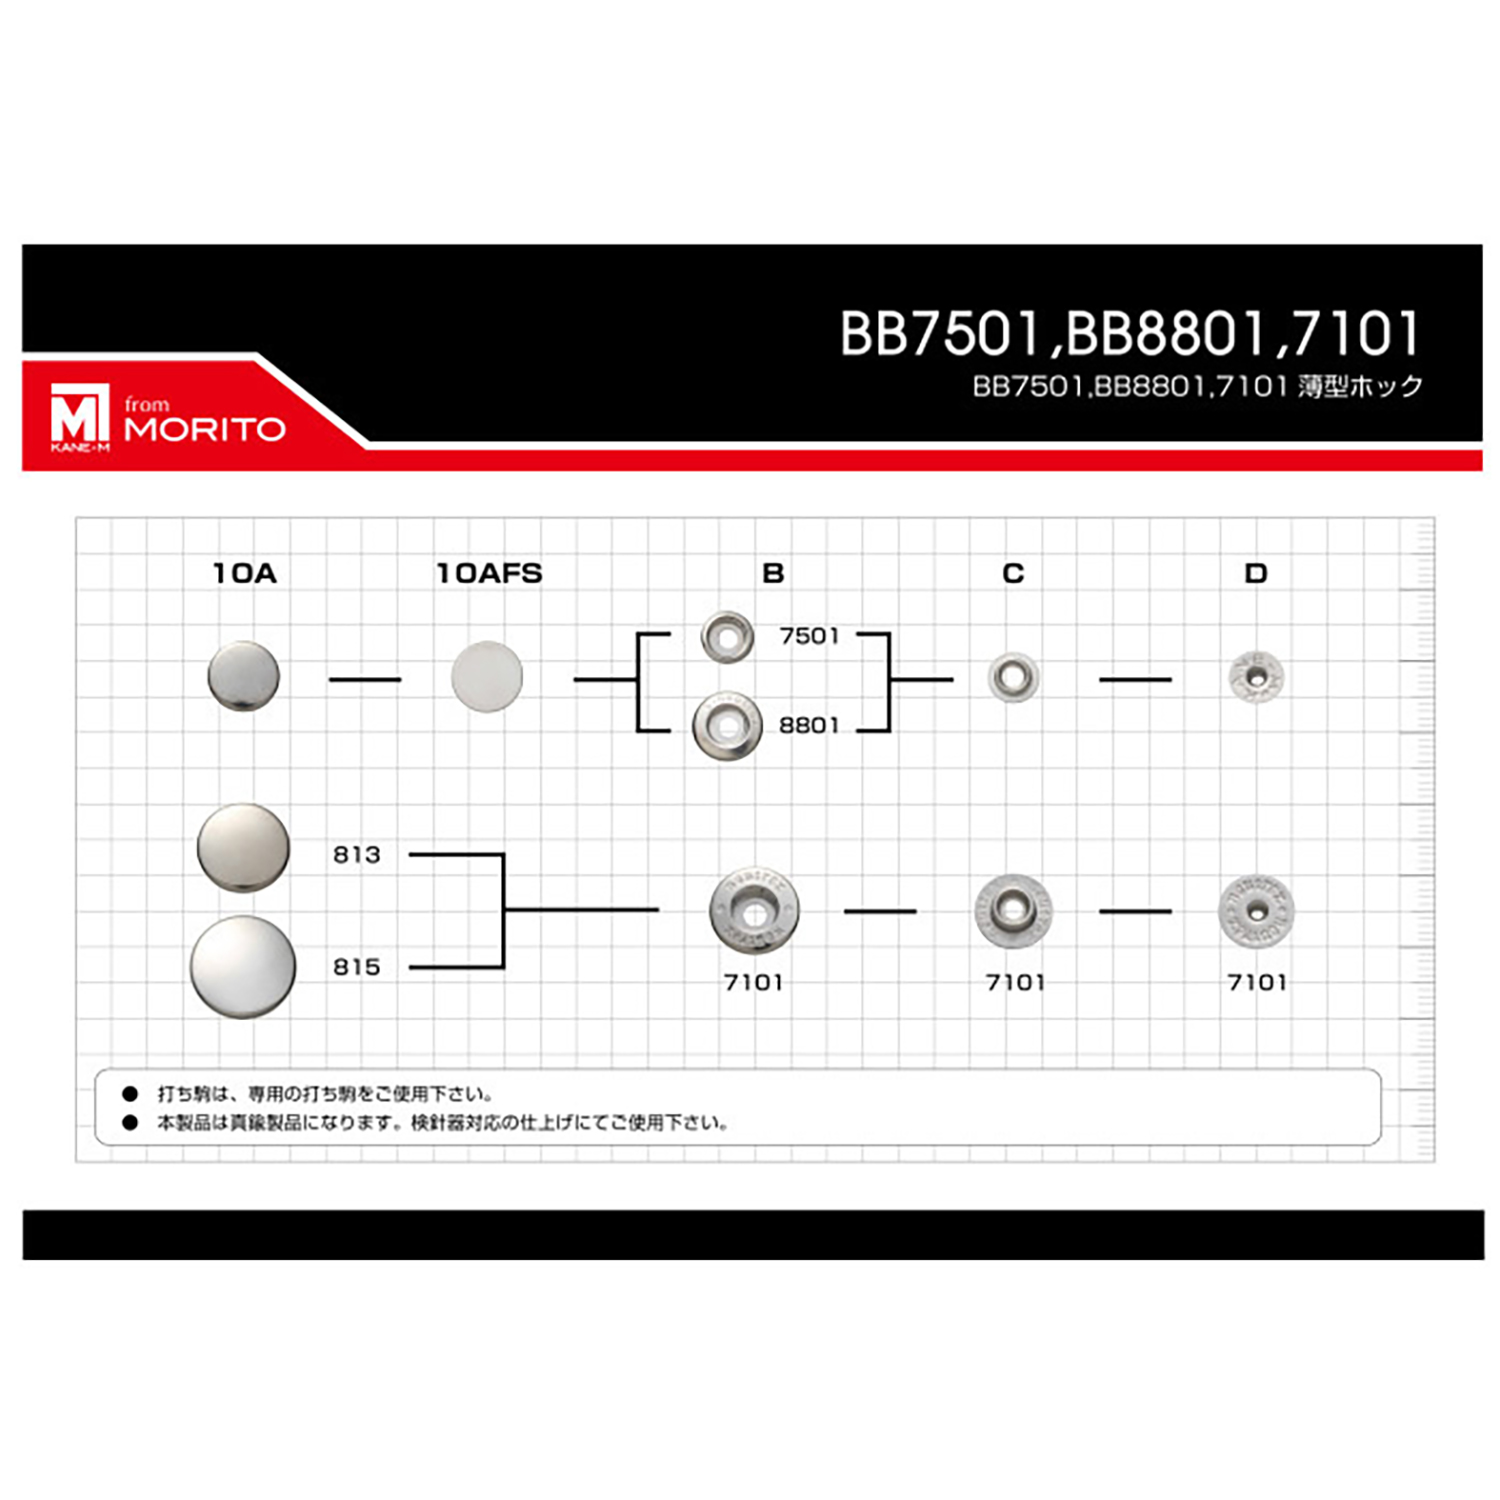 8801 8801B/C/D Unterteile (Sockel/Bolzen/Pfosten SET)[Druckverschluss/Ösenscheibe] Morito